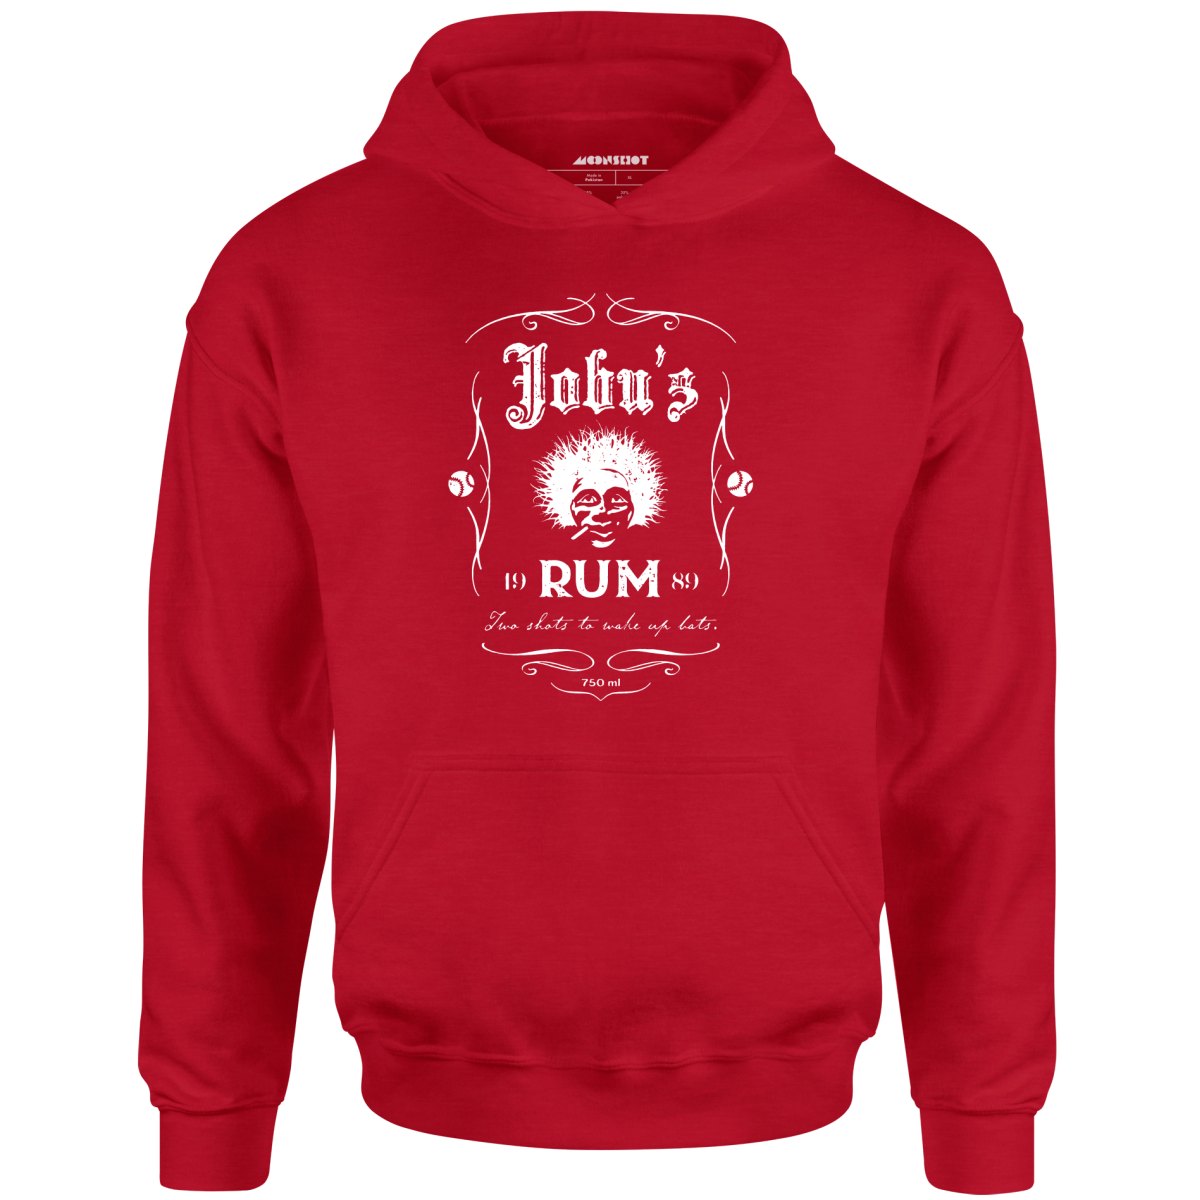 Jobu's Rum - Unisex Hoodie